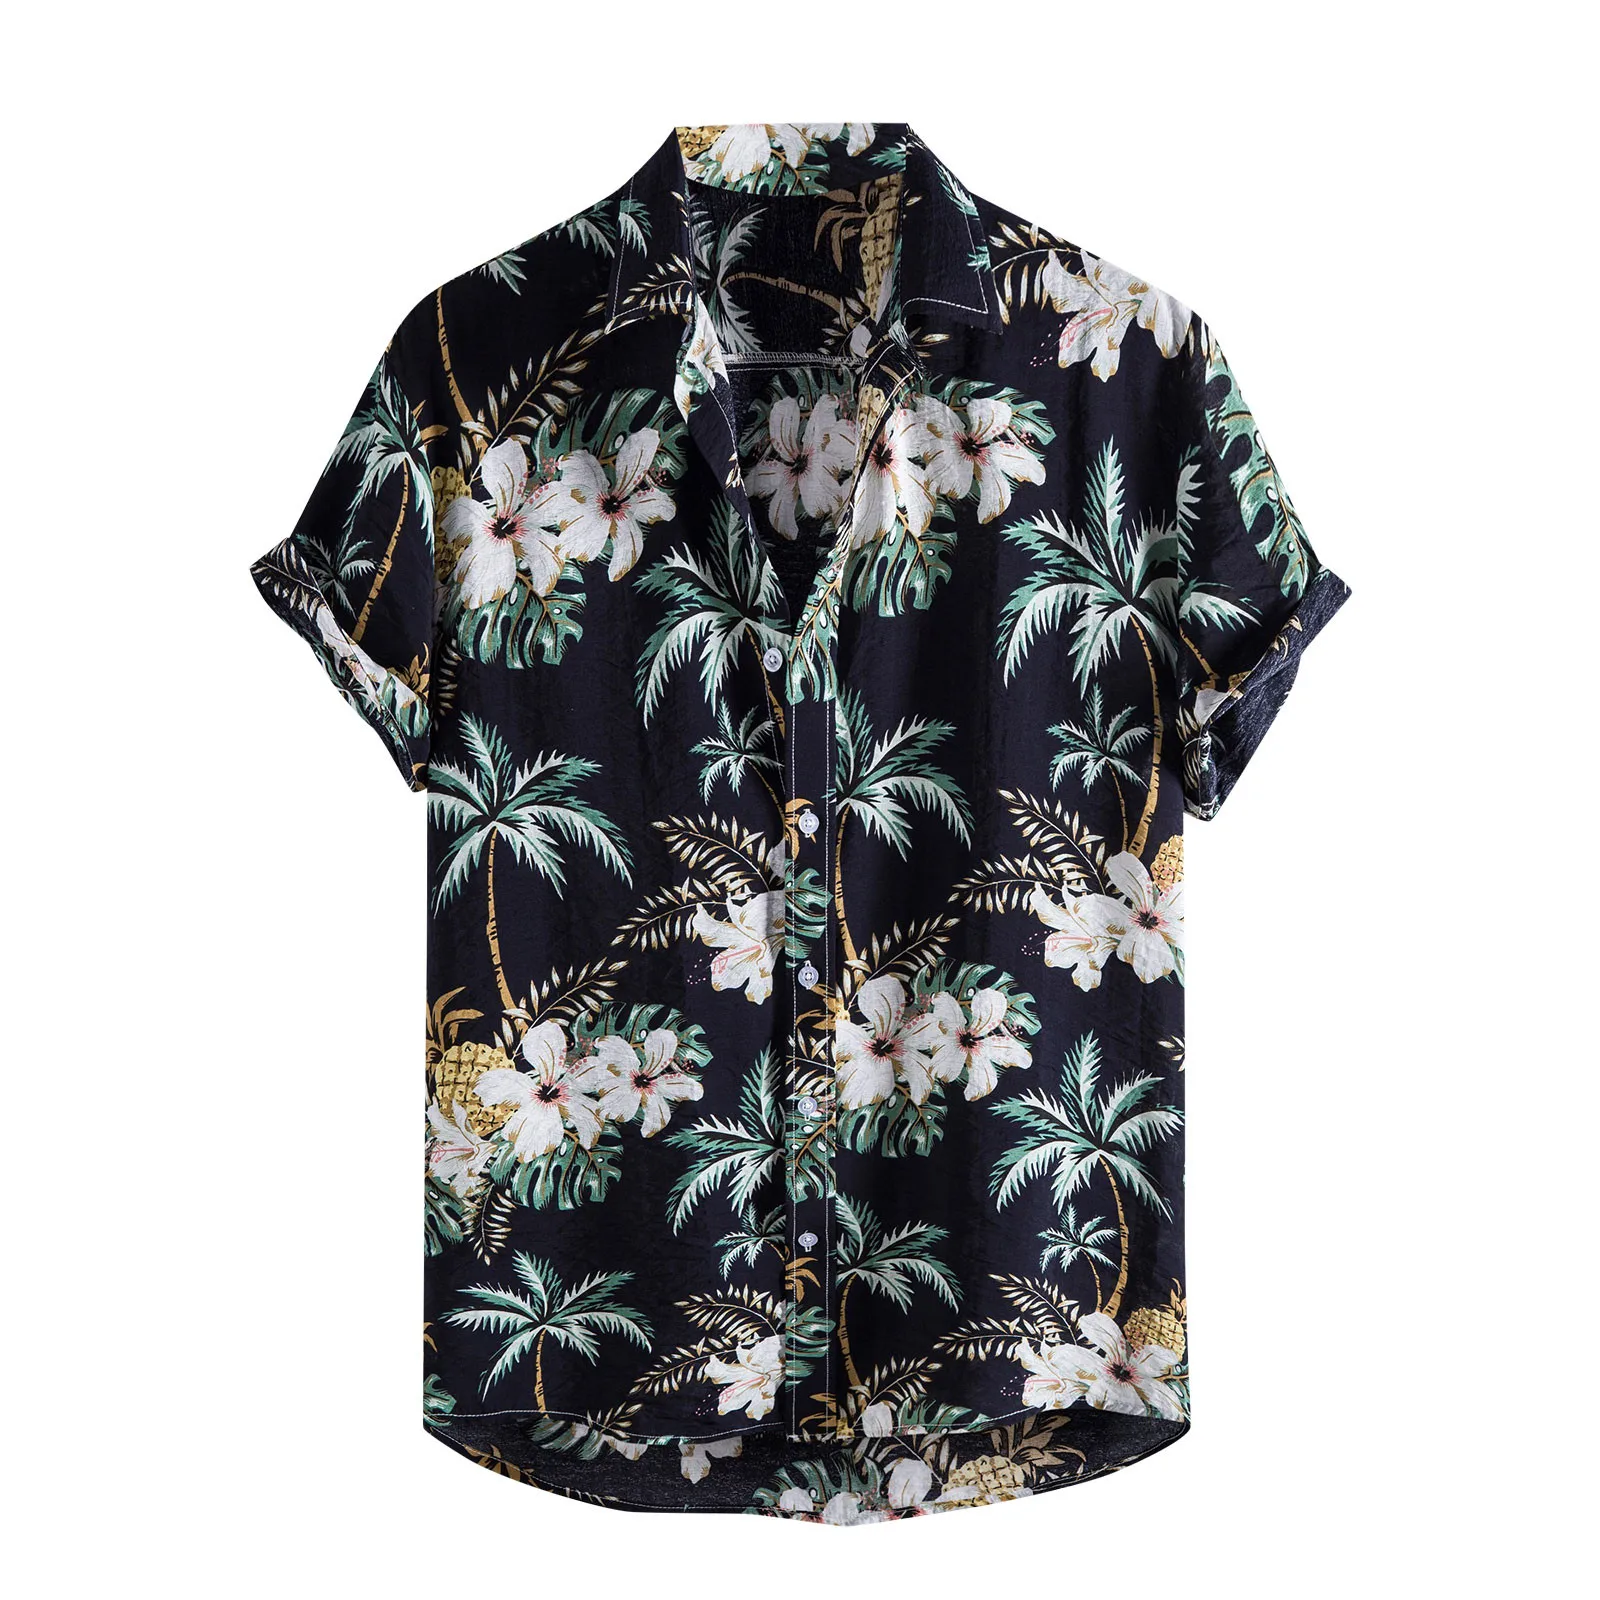 

Новые Гавайские рубашки Aloha для мужчин, Летняя Повседневная рубашка с принтом тропических растений, карманами, пуговицами и коротким рукаво...